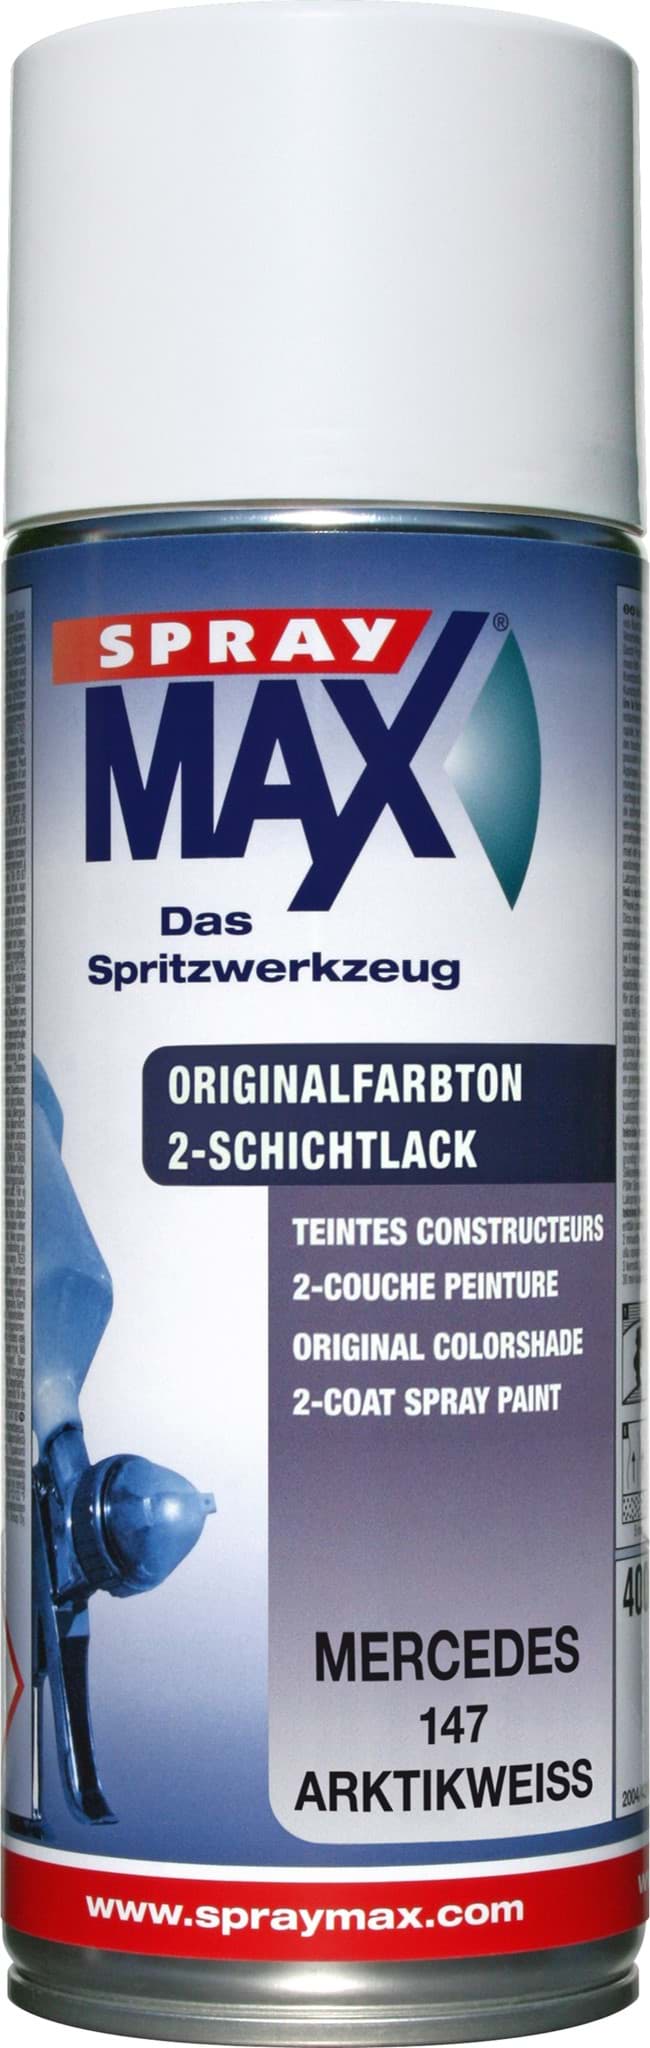 SprayMax Originalfarbton für Mercedes 147 arktikweiss resmi